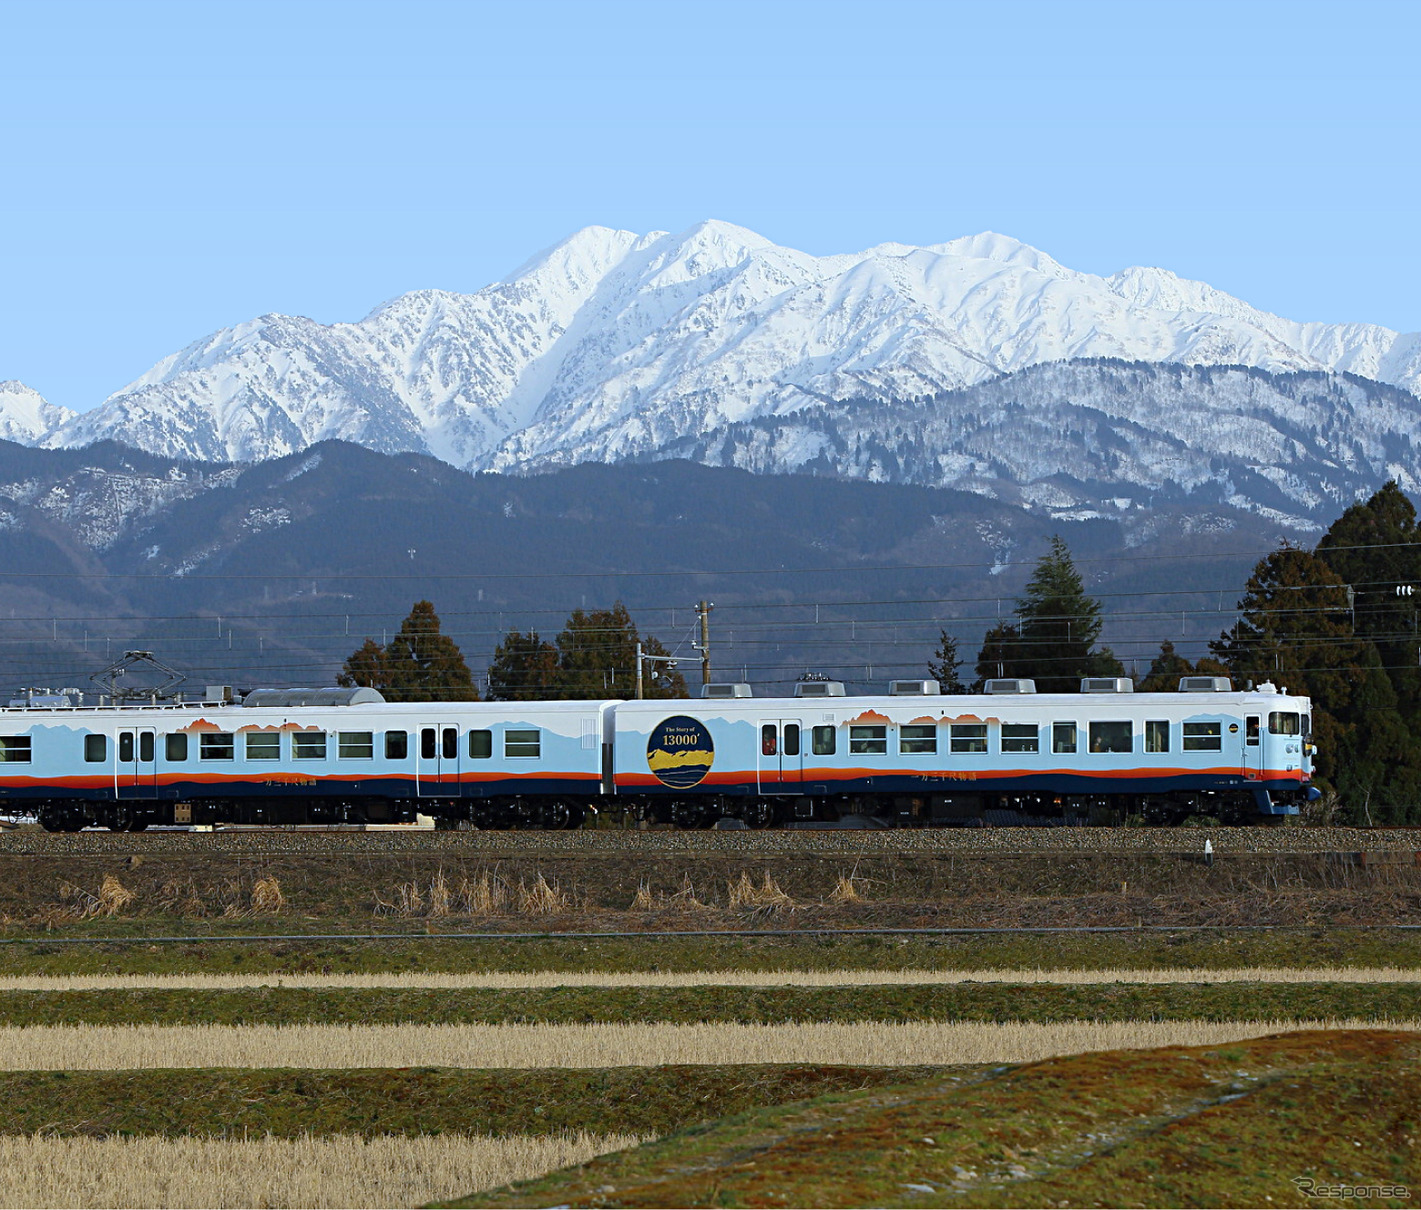 JR西日本から譲り受けた413系近郊型電車を改造し、2019年4月にデビューした『一万三千尺物語』。「一万三千尺」は富山県の高低差（約4000m）を尺貫法で表したもので、車内で富山県の食材を使った食事を楽しめるダイニング列車となっている。